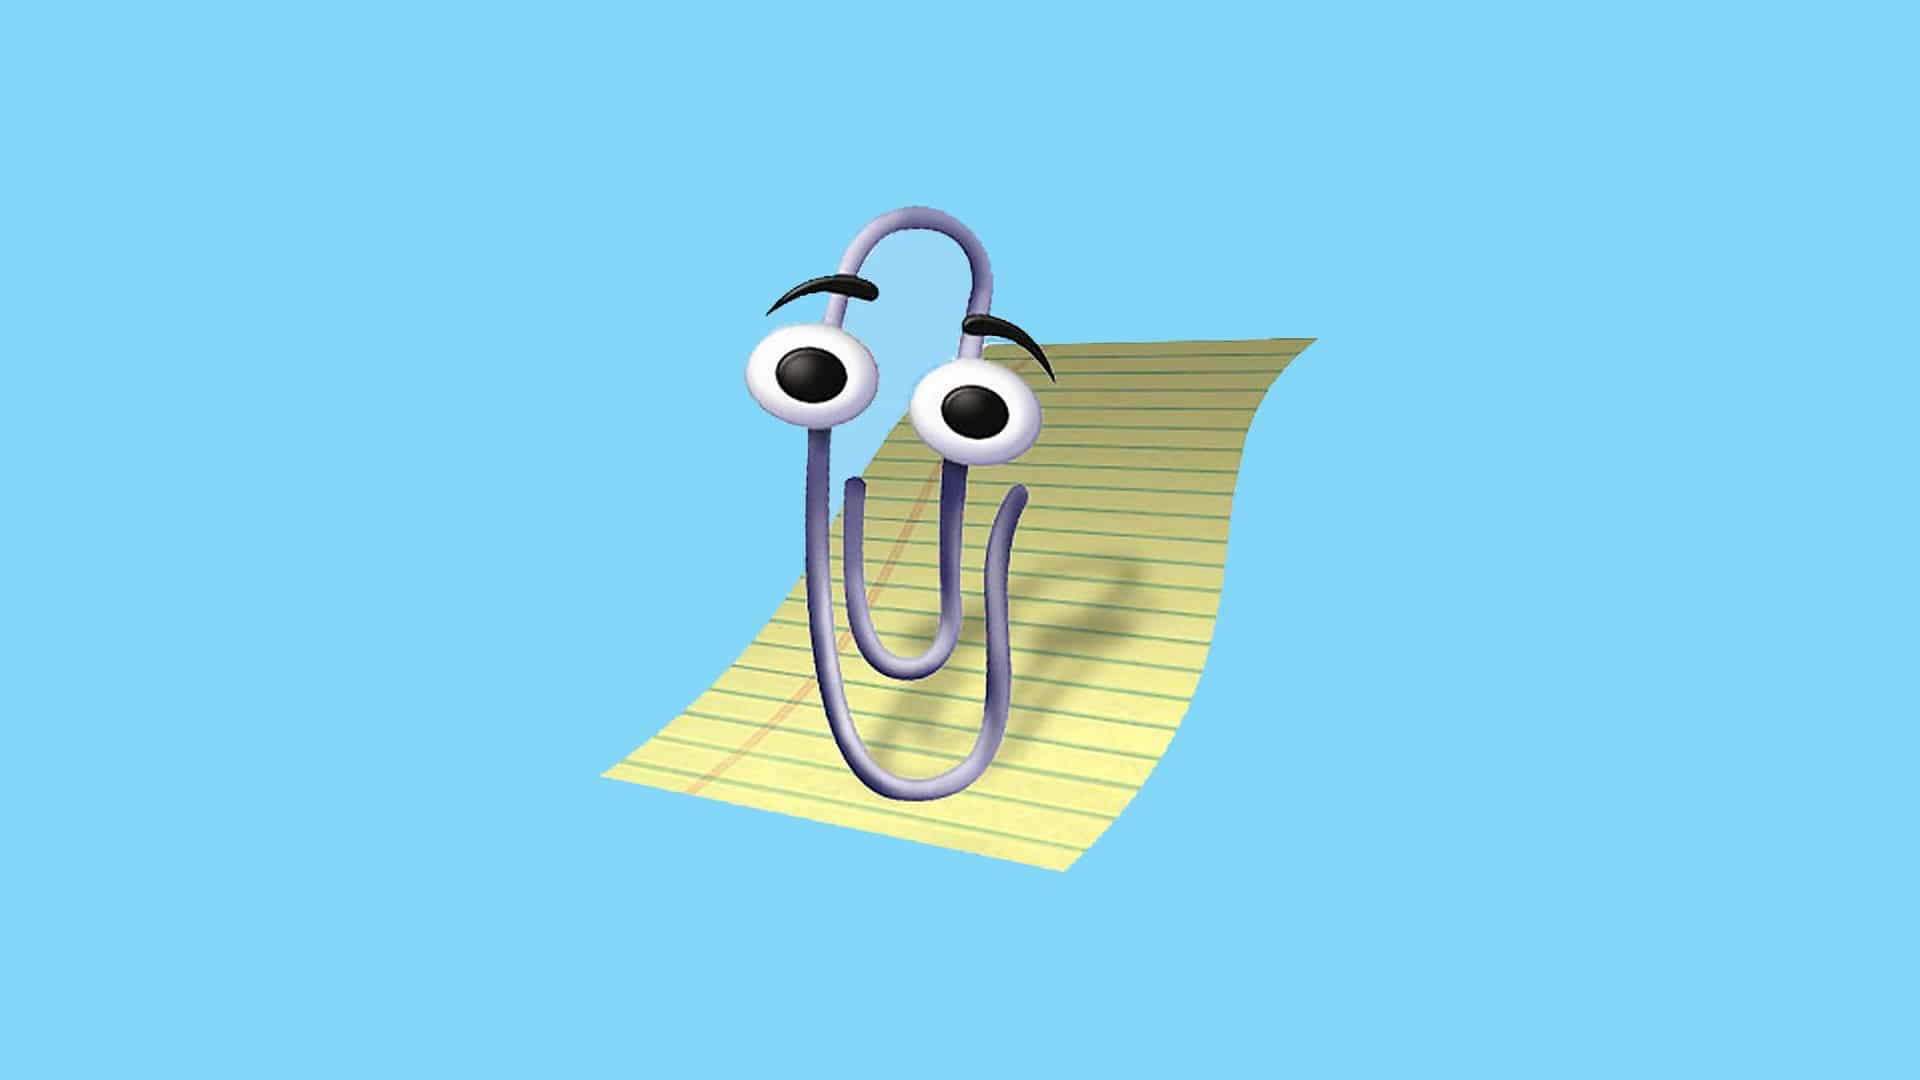 La graffetta animata Clippy tornerà in Microsoft 365? thumbnail